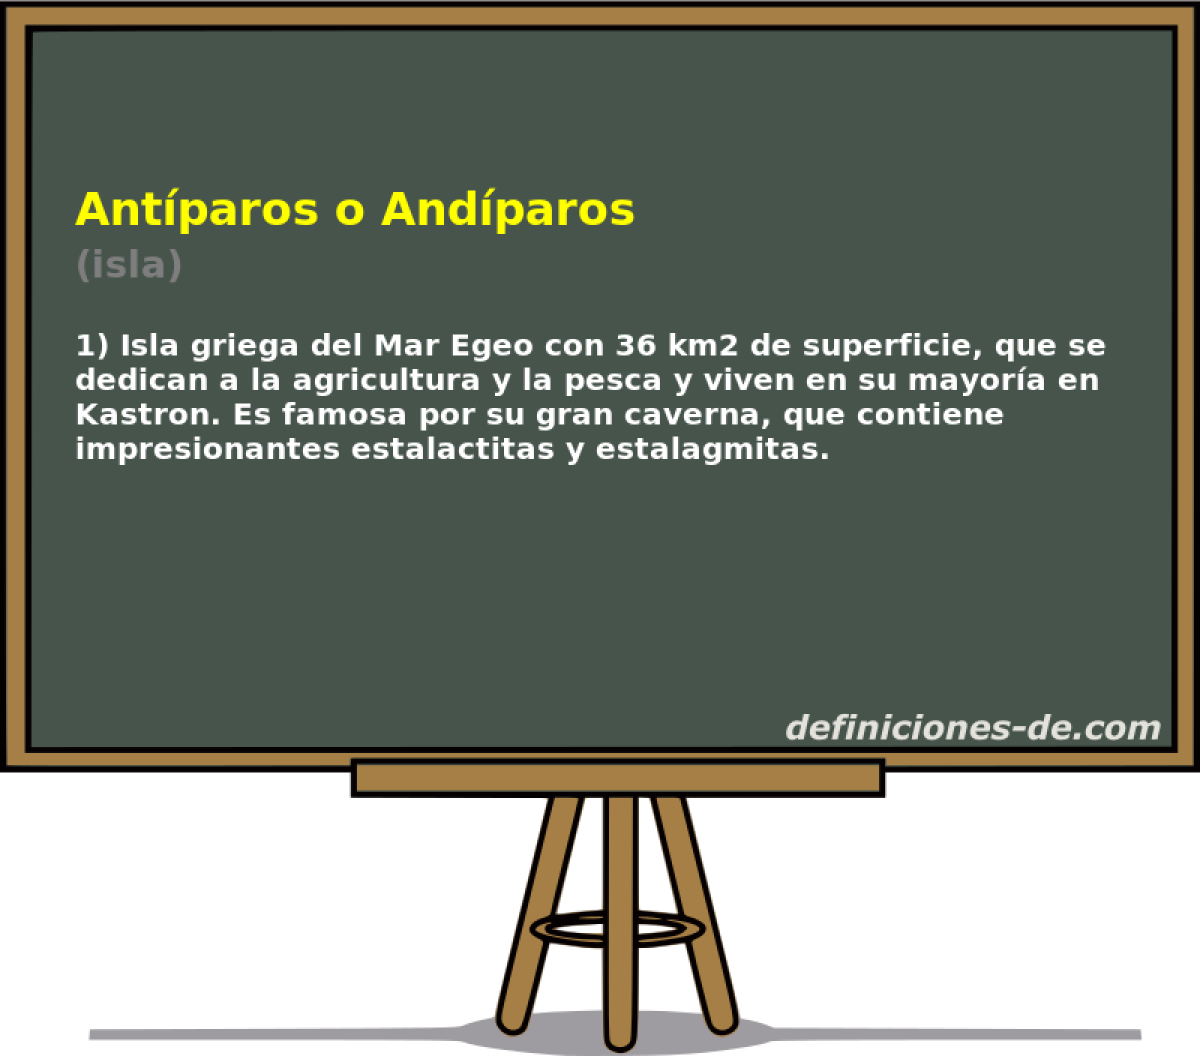 Antparos o Andparos (isla)